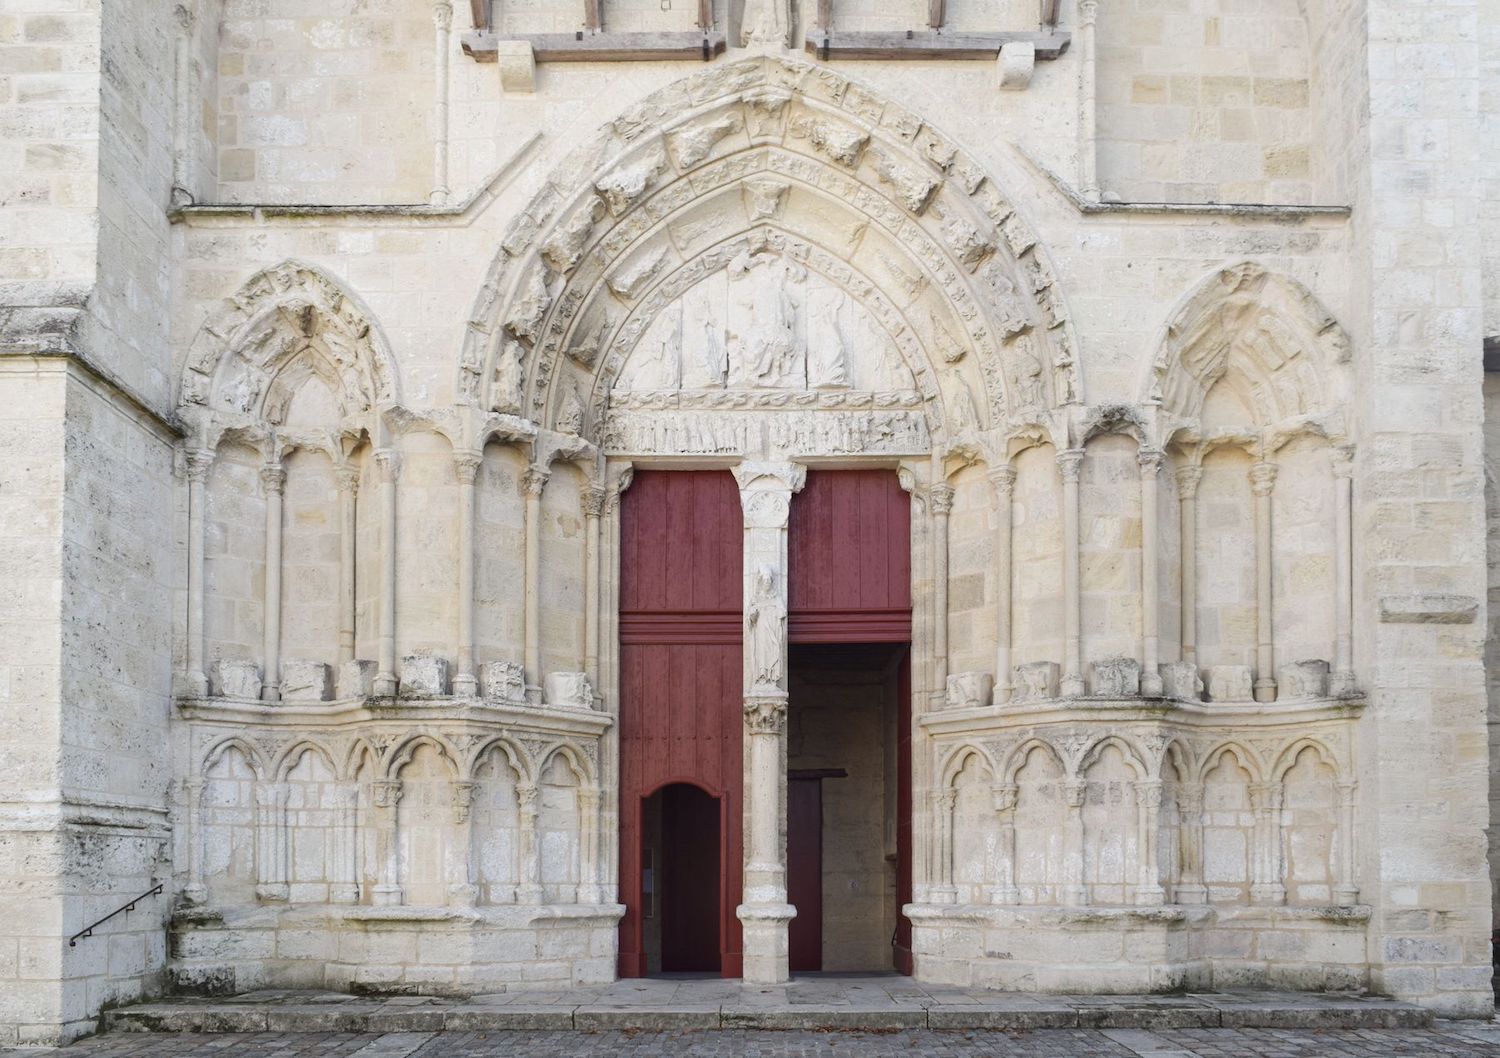 Collegiale Church, Saint-Émilion, France